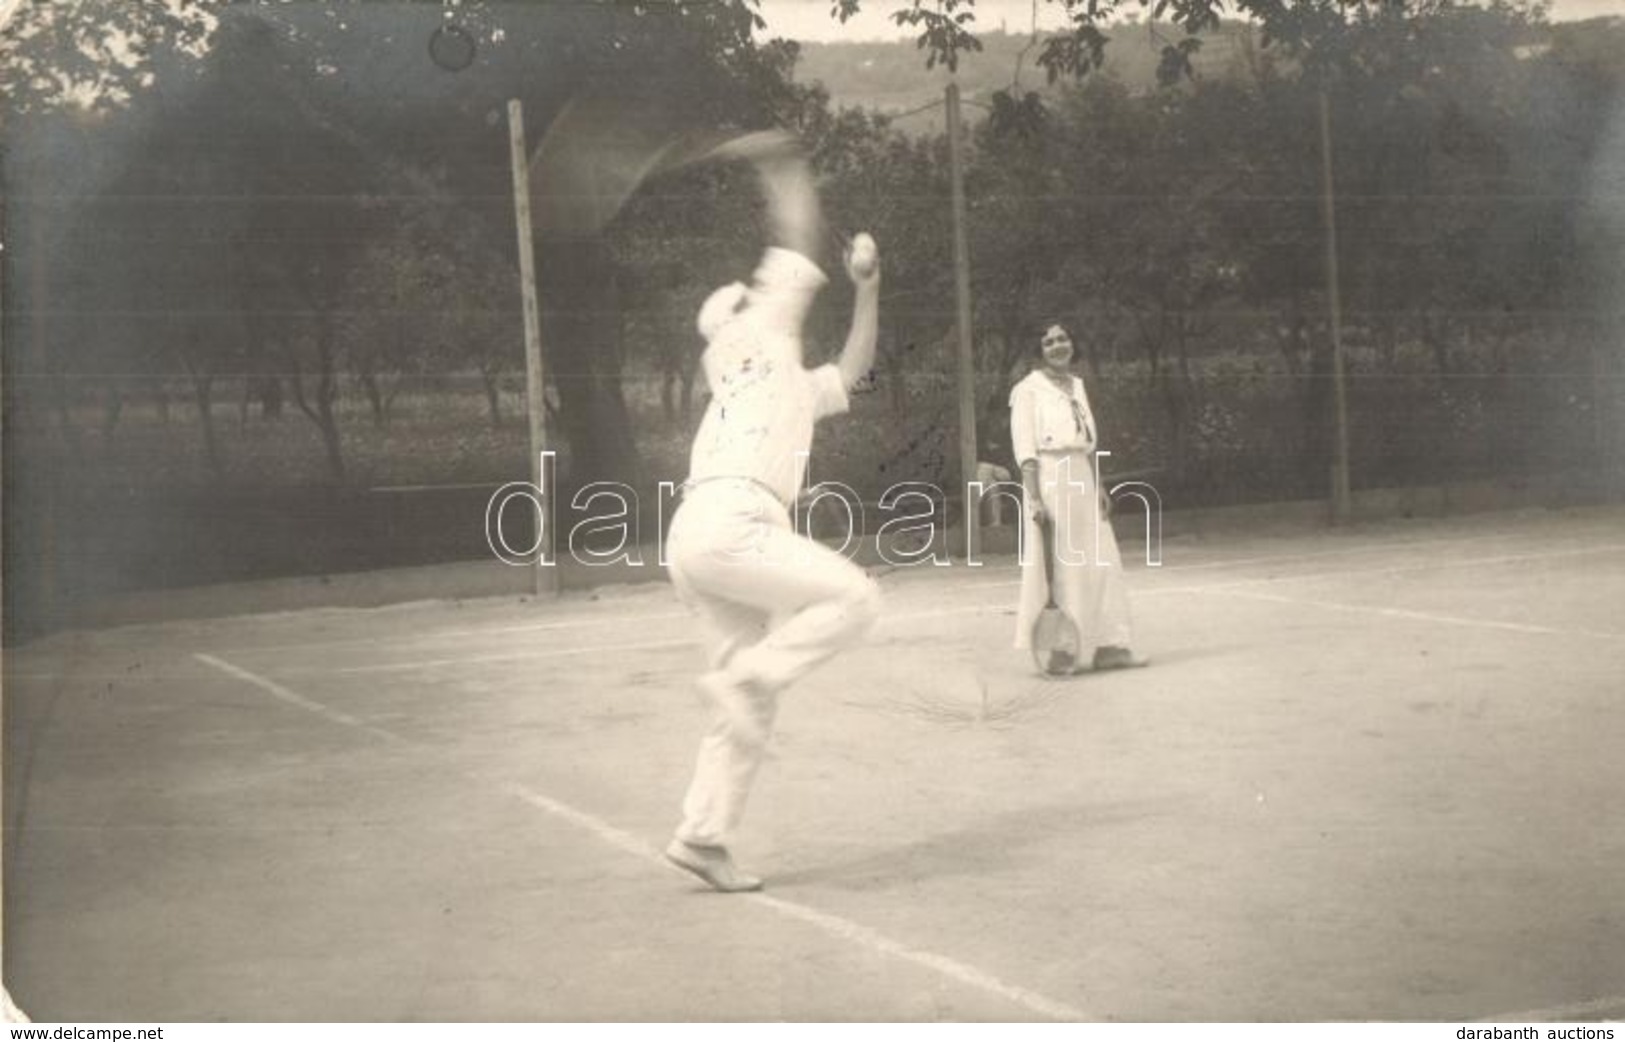 * T2 1914 Balatonalmádi, Teniszezők A Teniszpályán, Sport. Photo - Non Classés